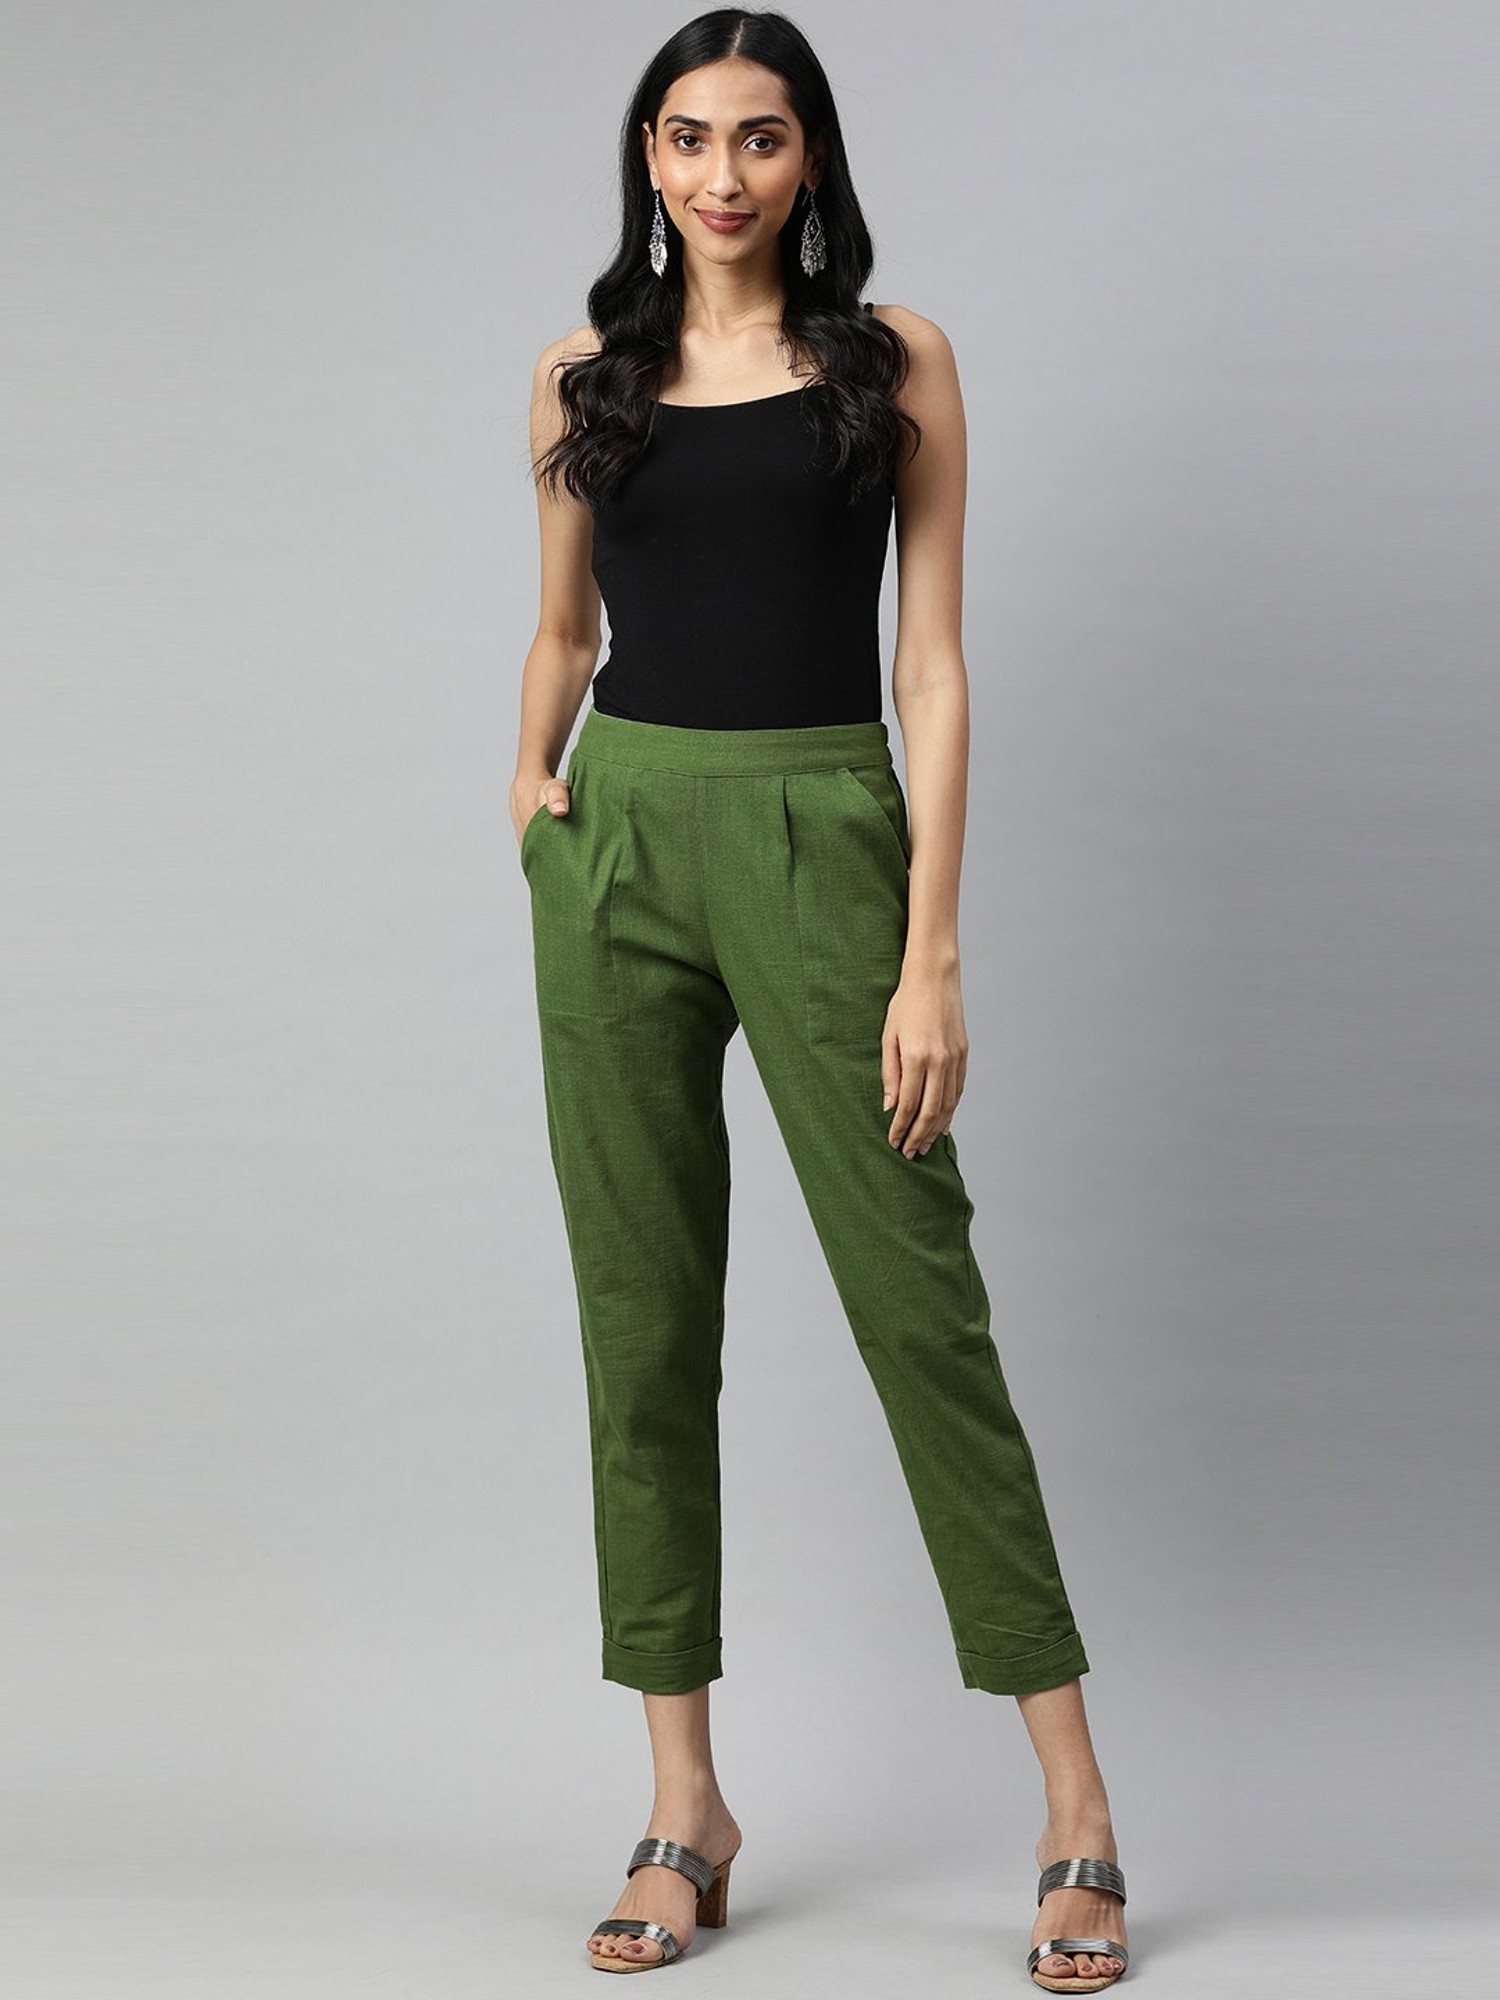 Juniper Green Textured Premium Wool Blend Pant For Women